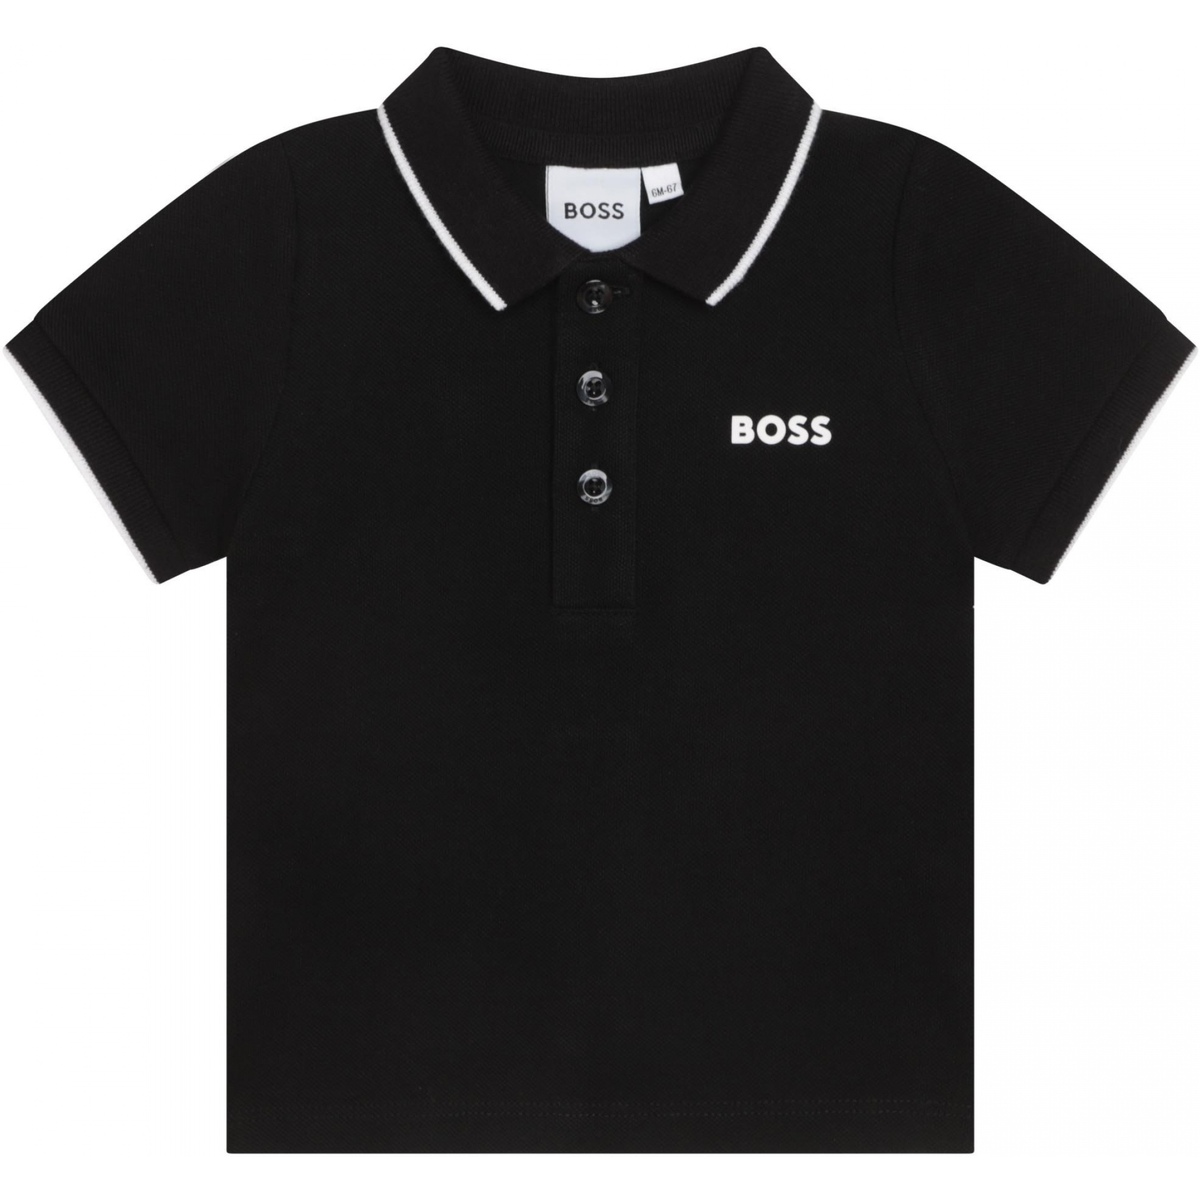 Vêtements Garçon office-accessories men polo-shirts Socks Polo Bébé manches courtes Noir